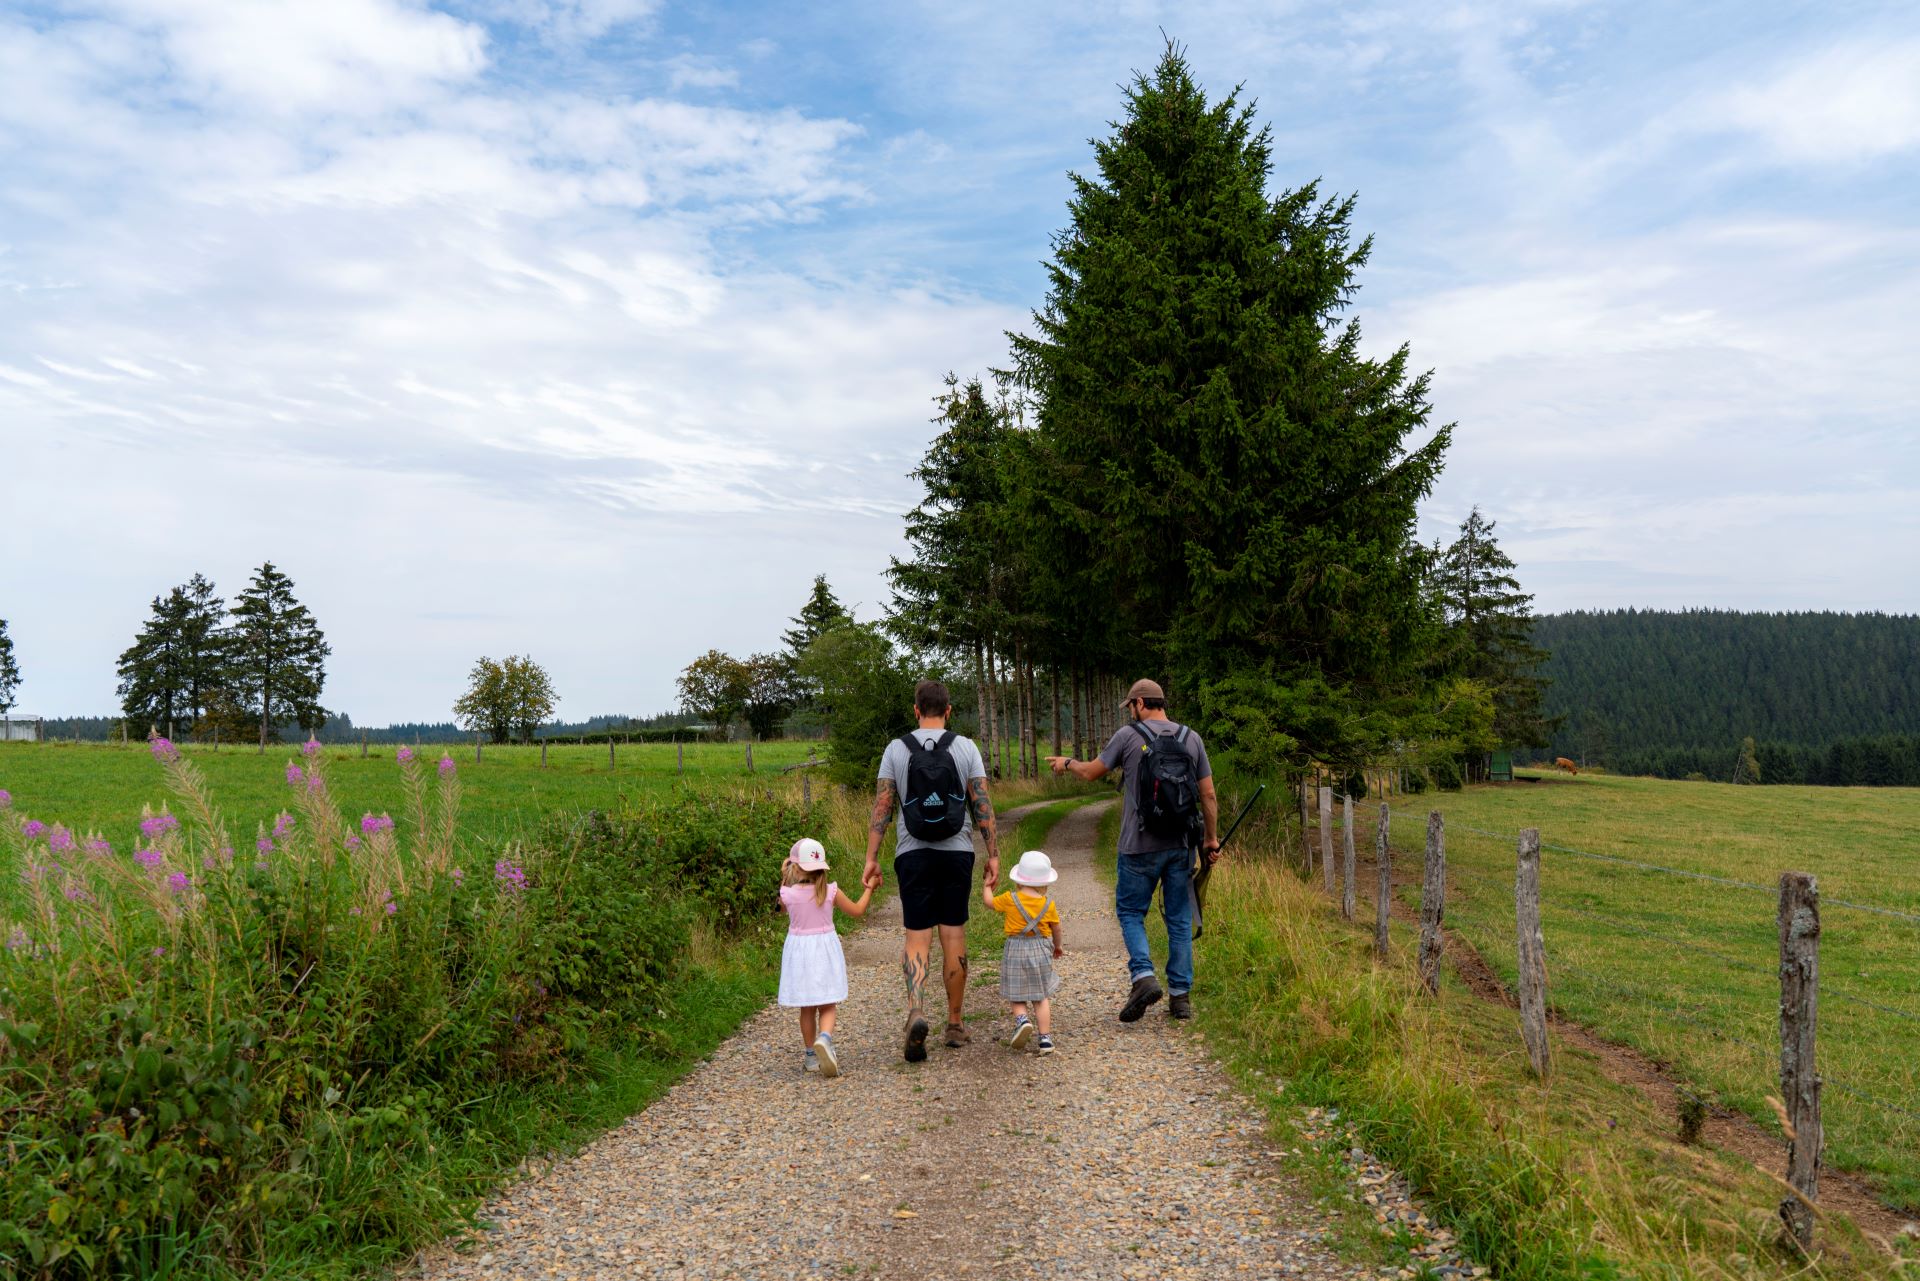 Un homme tient les mains de ses deux petites filles alors qu'elles marchent à côté d'un guide de la nature. Le chemin est large et caillouteux, la nature environnante et les arbres sont verts.